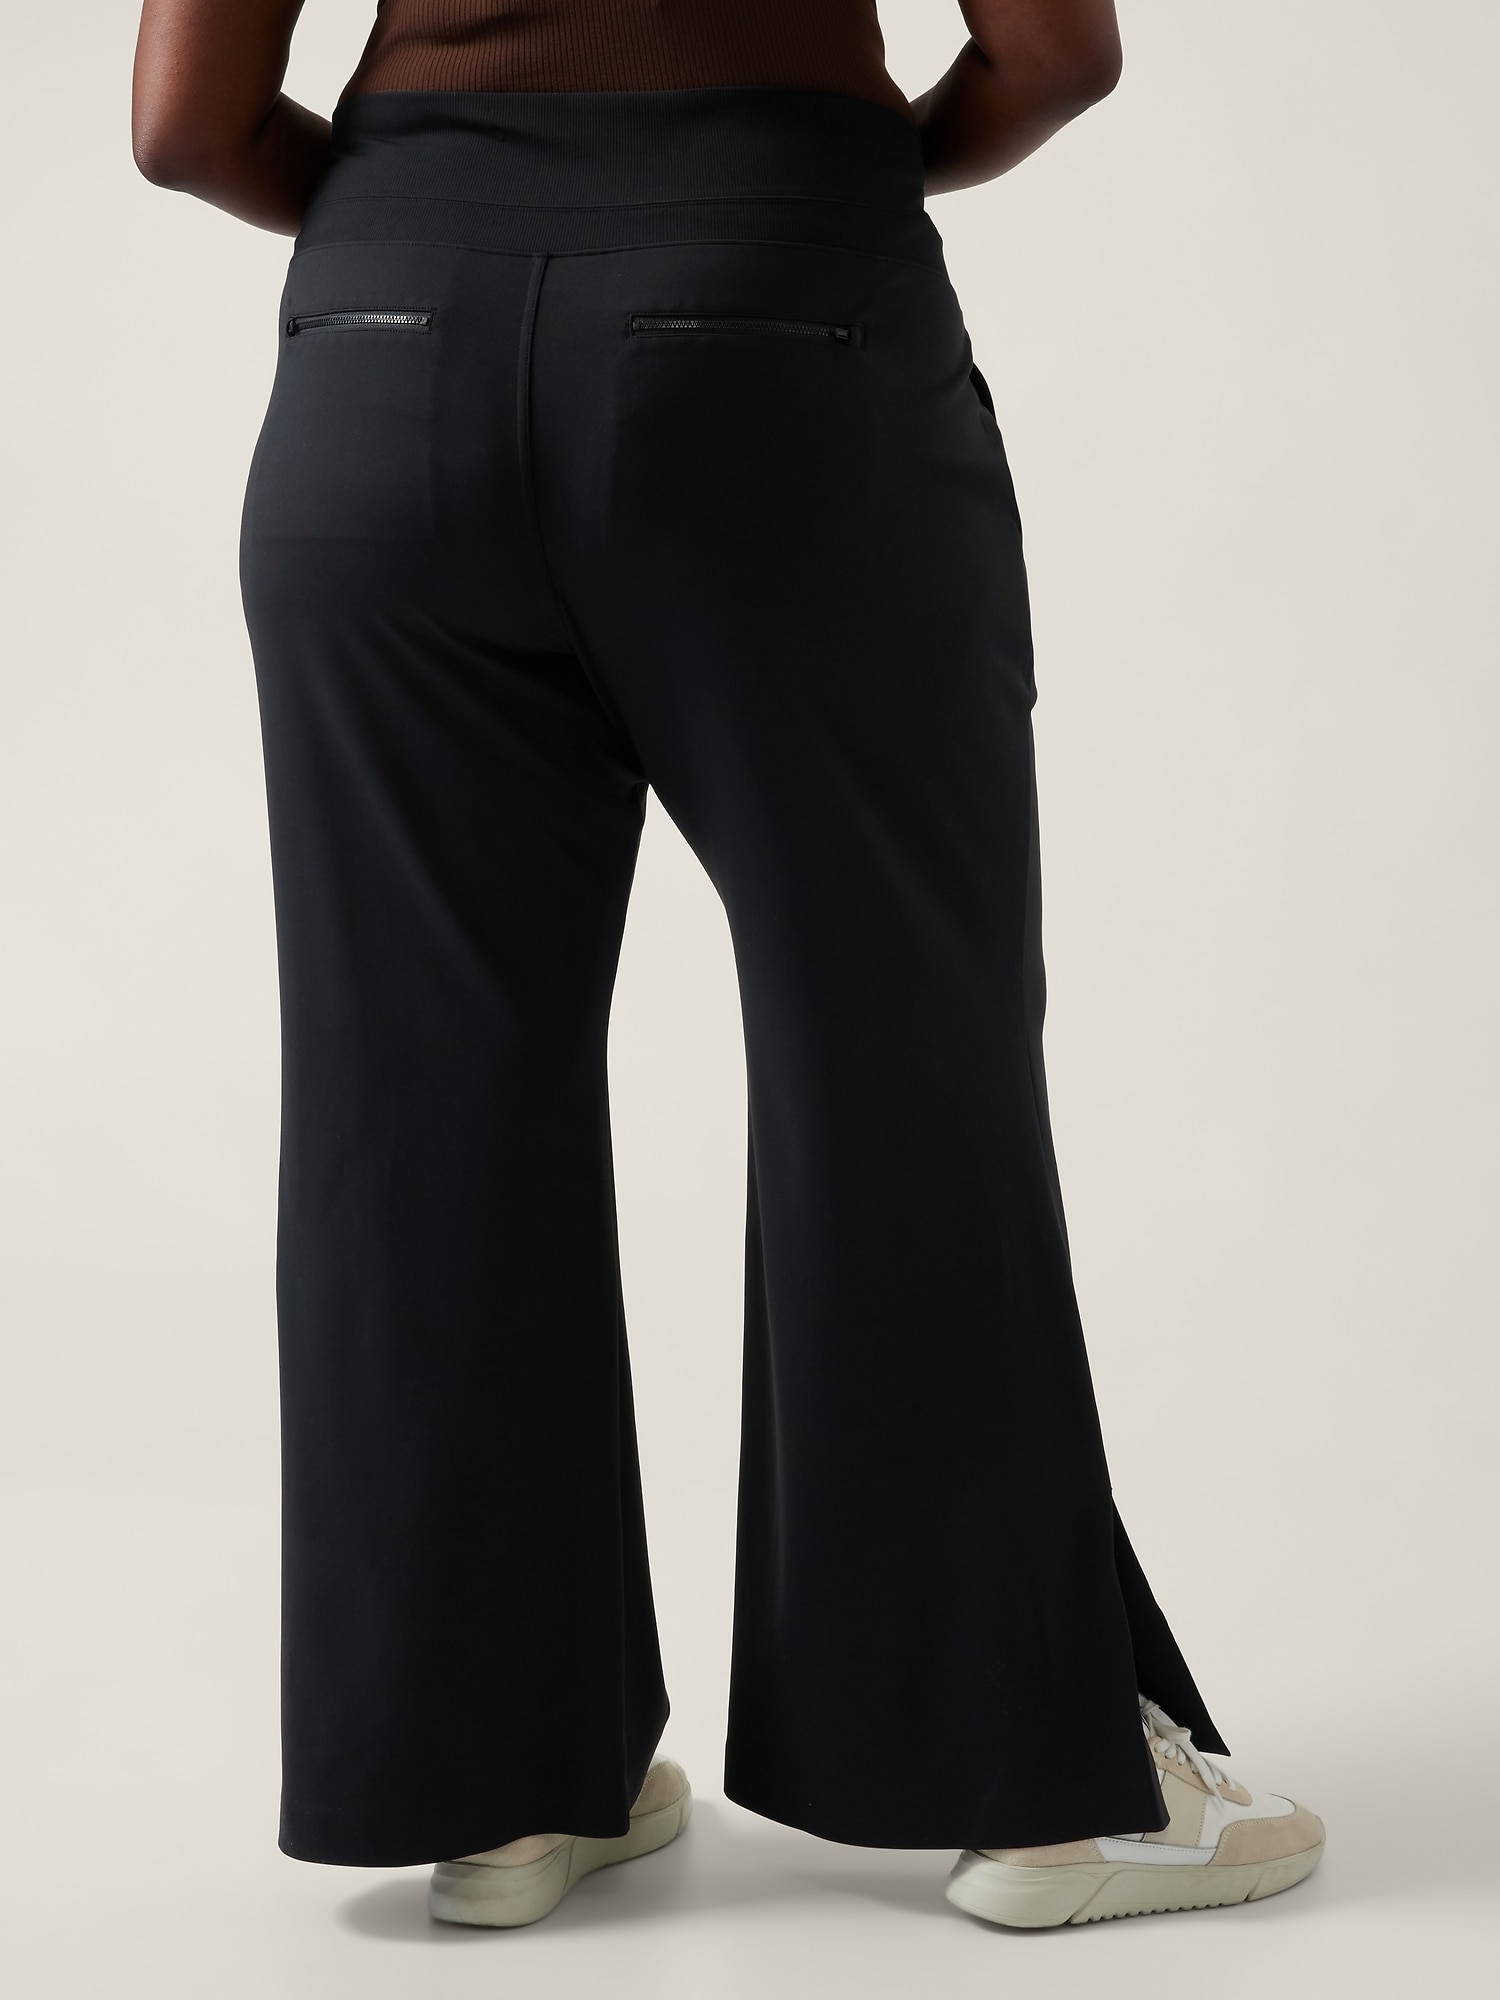 Athleta studio flare pant Black Size XS - $26 (78% Off Retail